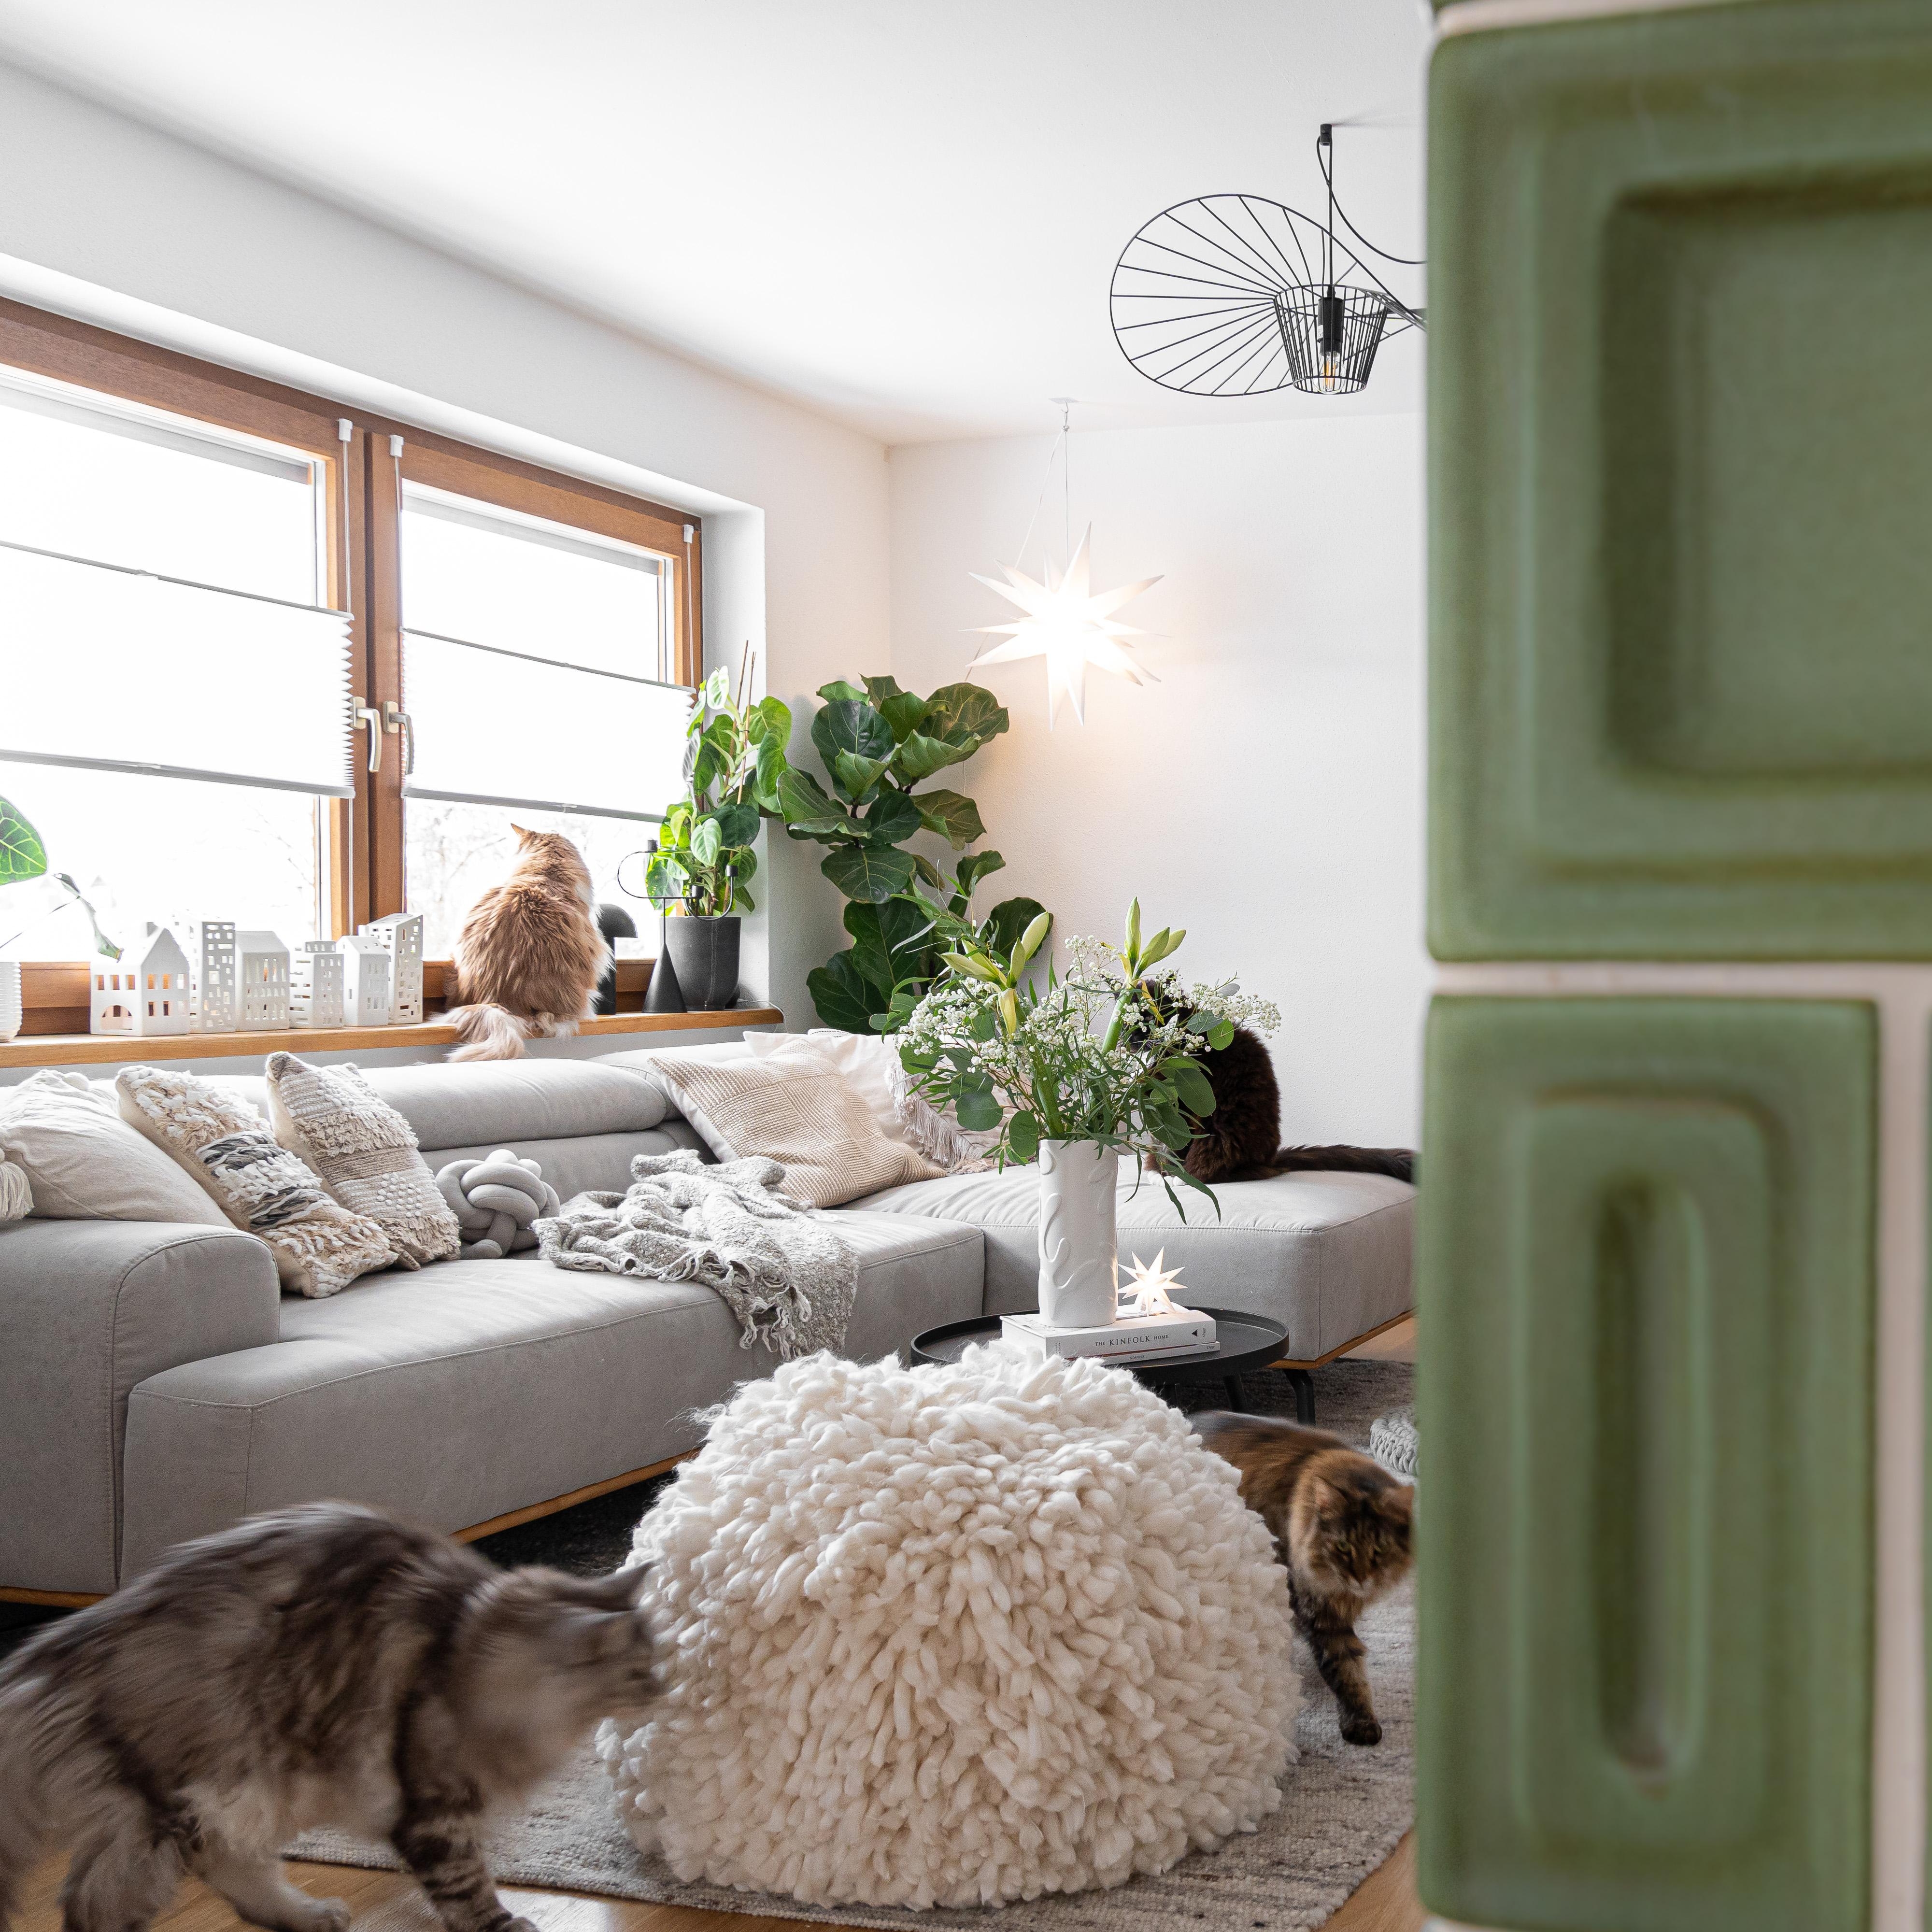 #wohnen #wohnzimmer #livingroom #hygge #gemütlich #hygge #dekorieren #solebich #cozy #myhome2inspire #couch #couchstyle